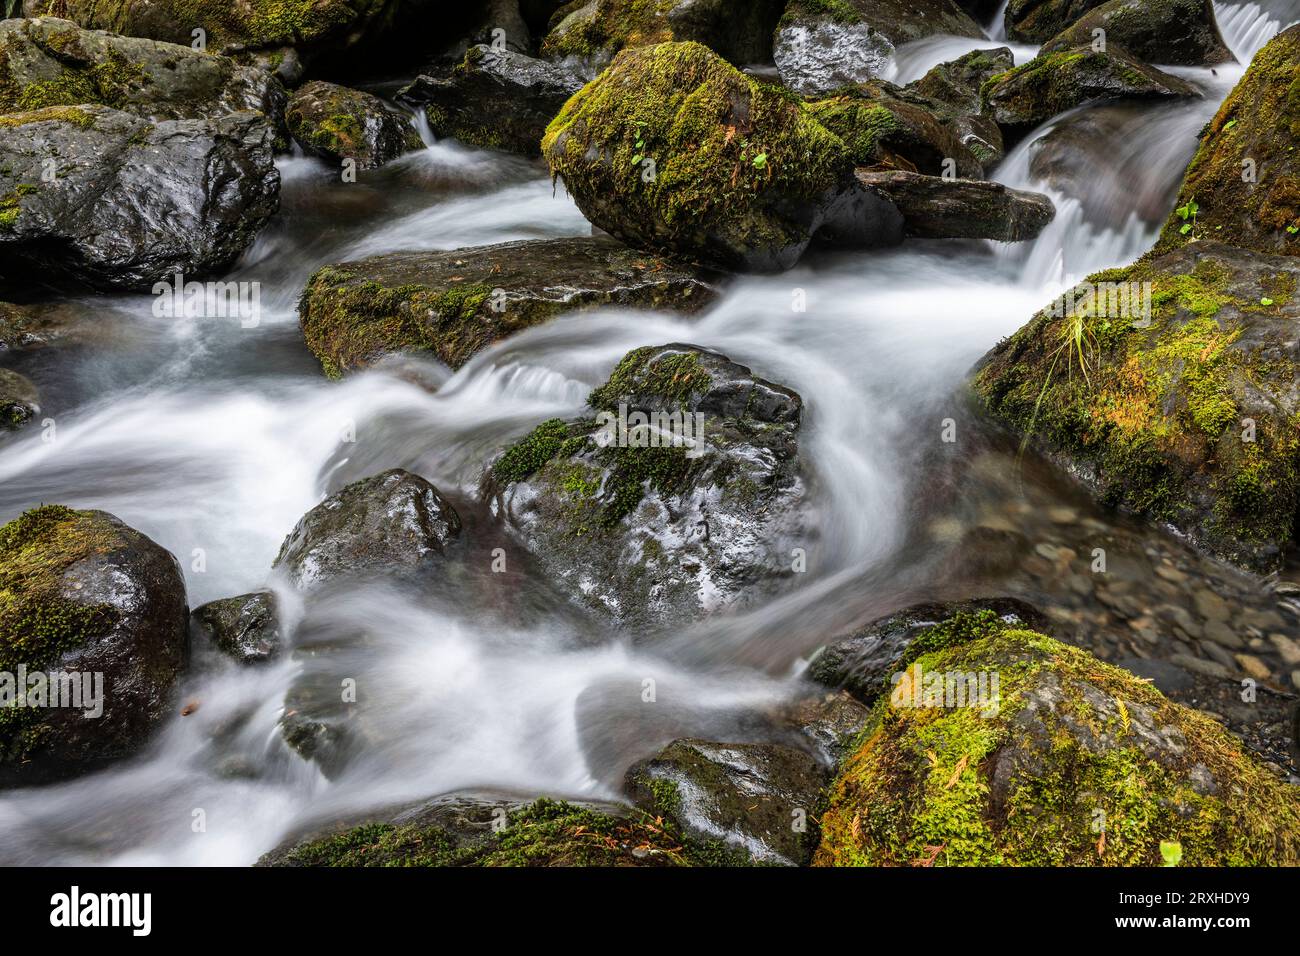 Lunga esposizione di acqua, rocce e muschio delle cascate Bunch nei pressi del lago Quinault nella Olympic National Forest Foto Stock